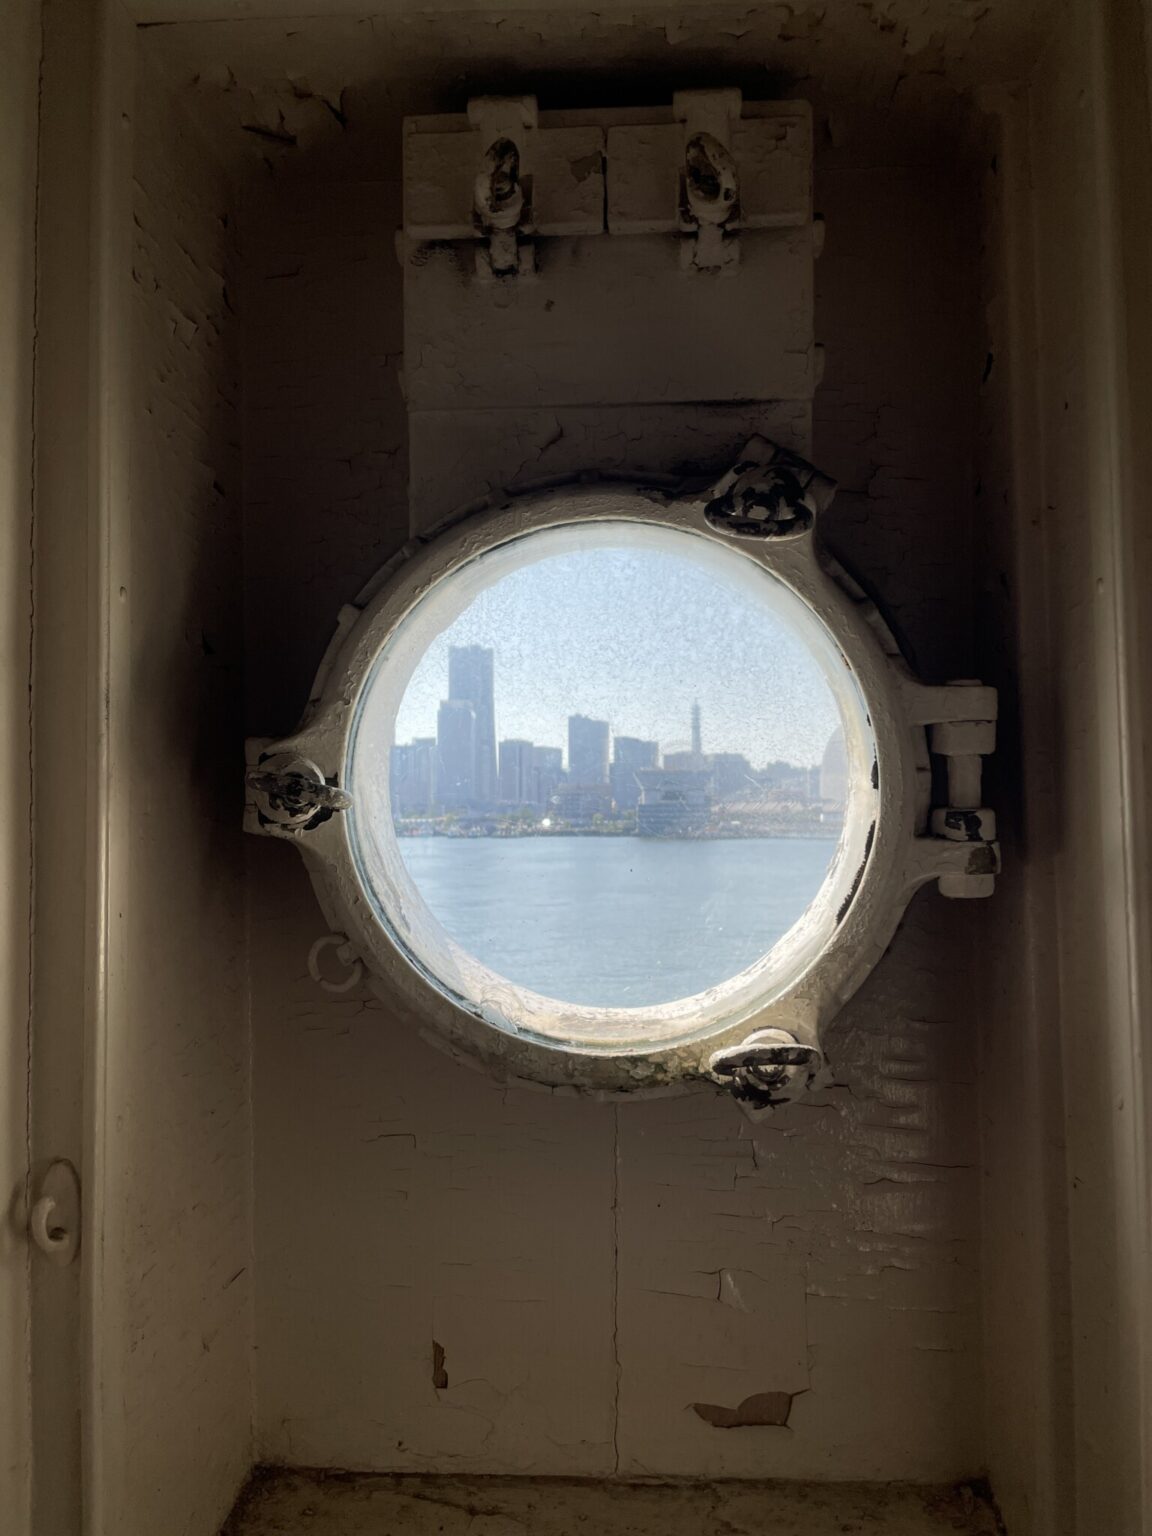 船内の丸窓から眺めるみなとみらい。